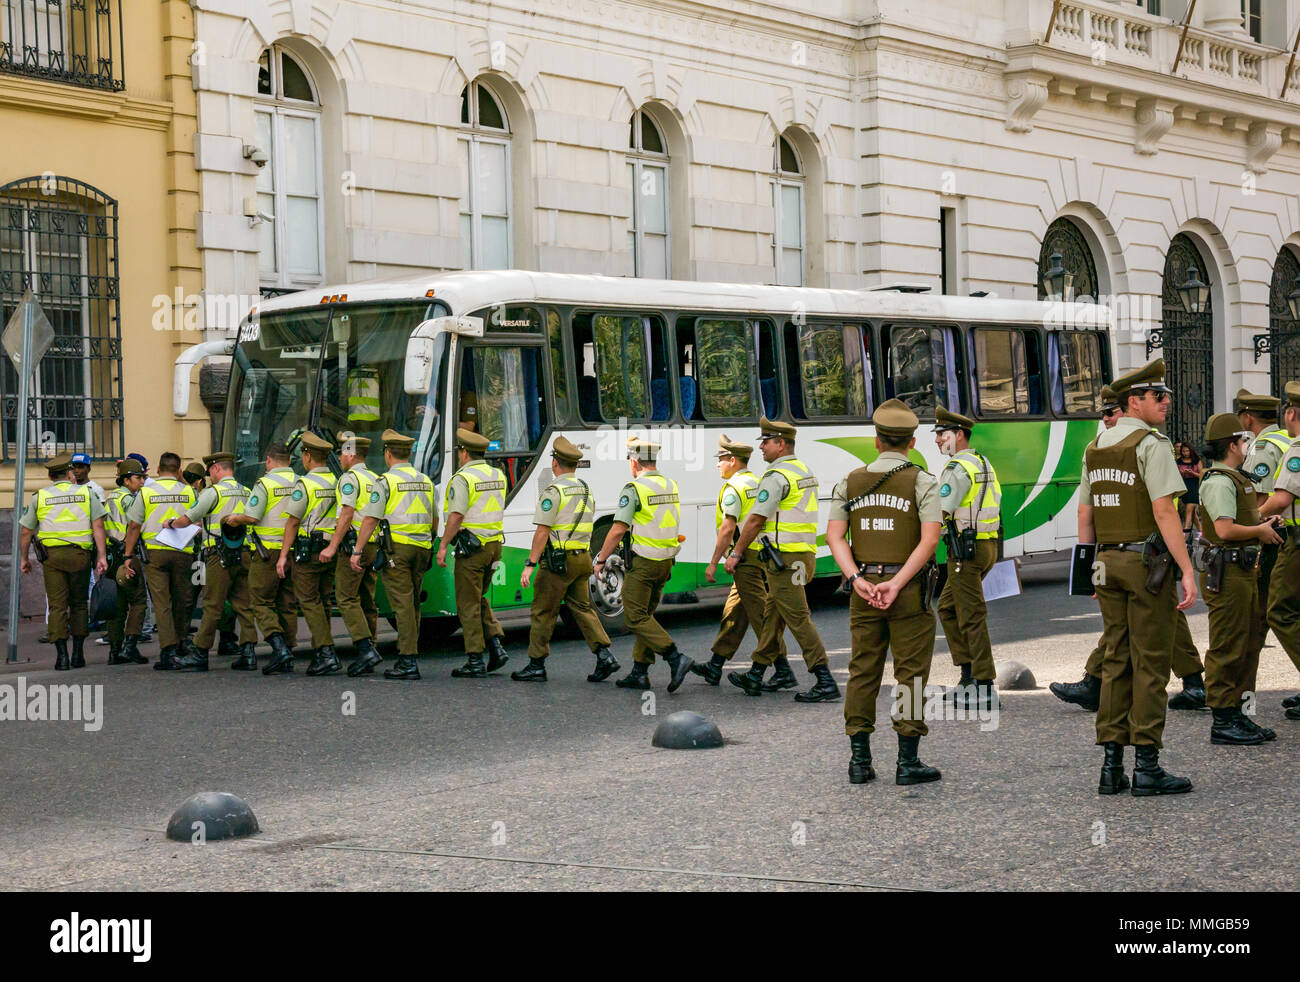 Venerdì Santo, Carabineros o polizia cilena in una linea di salire a bordo di un autobus, Plaza de Armas, Santiago del Cile, Sud America Foto Stock